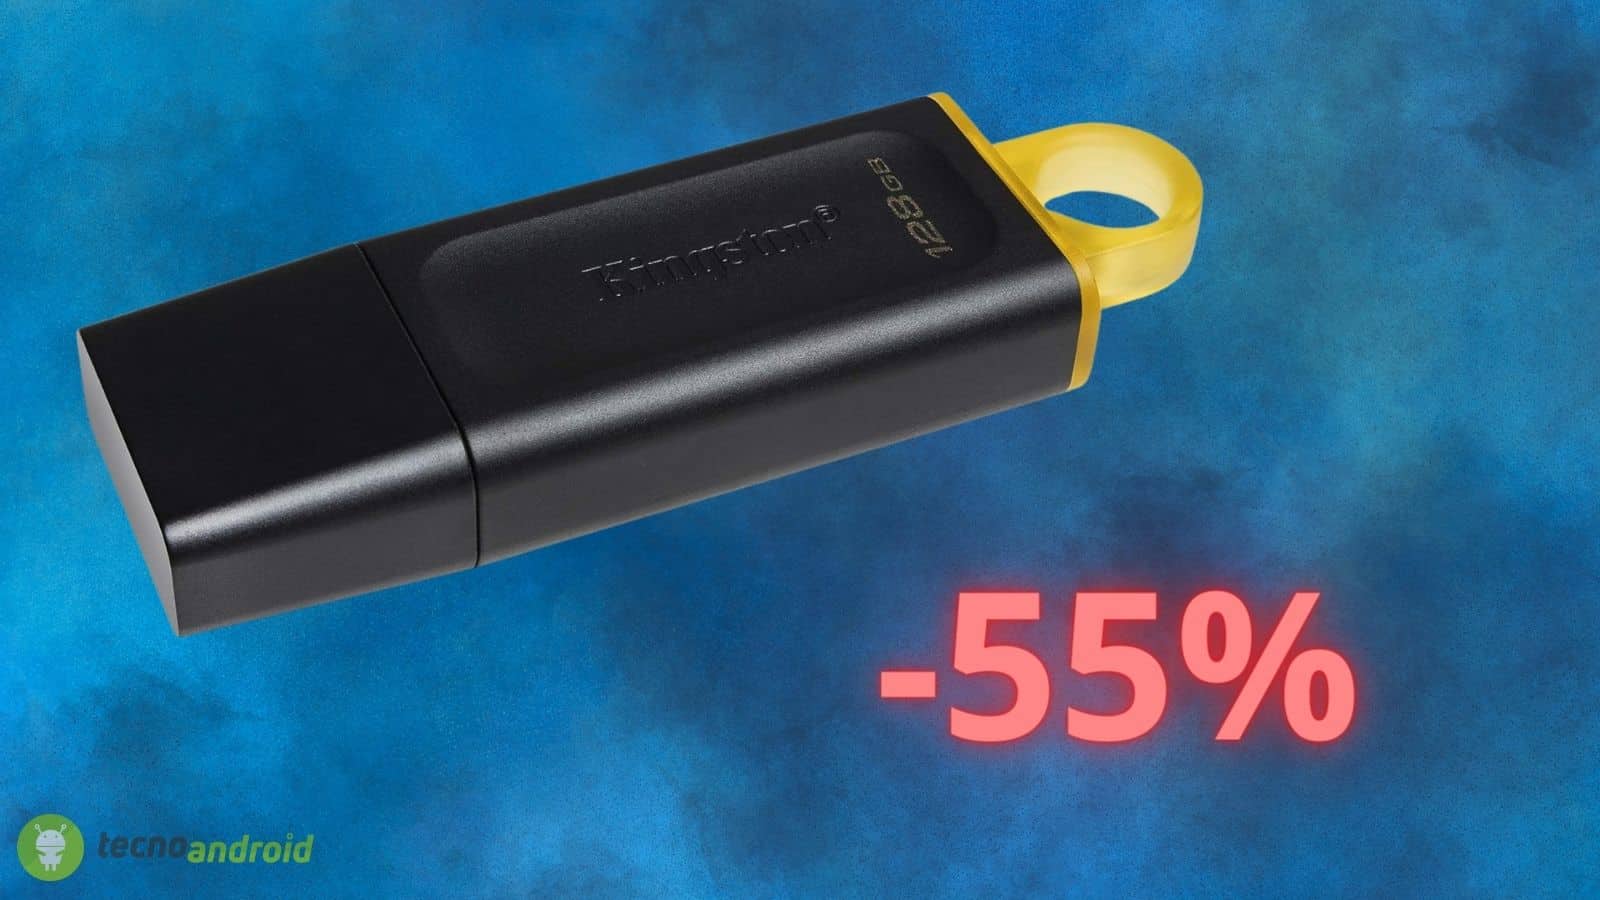 Chiavetta USB da 128GB a 8 euro: offerta del 55% su Amazon